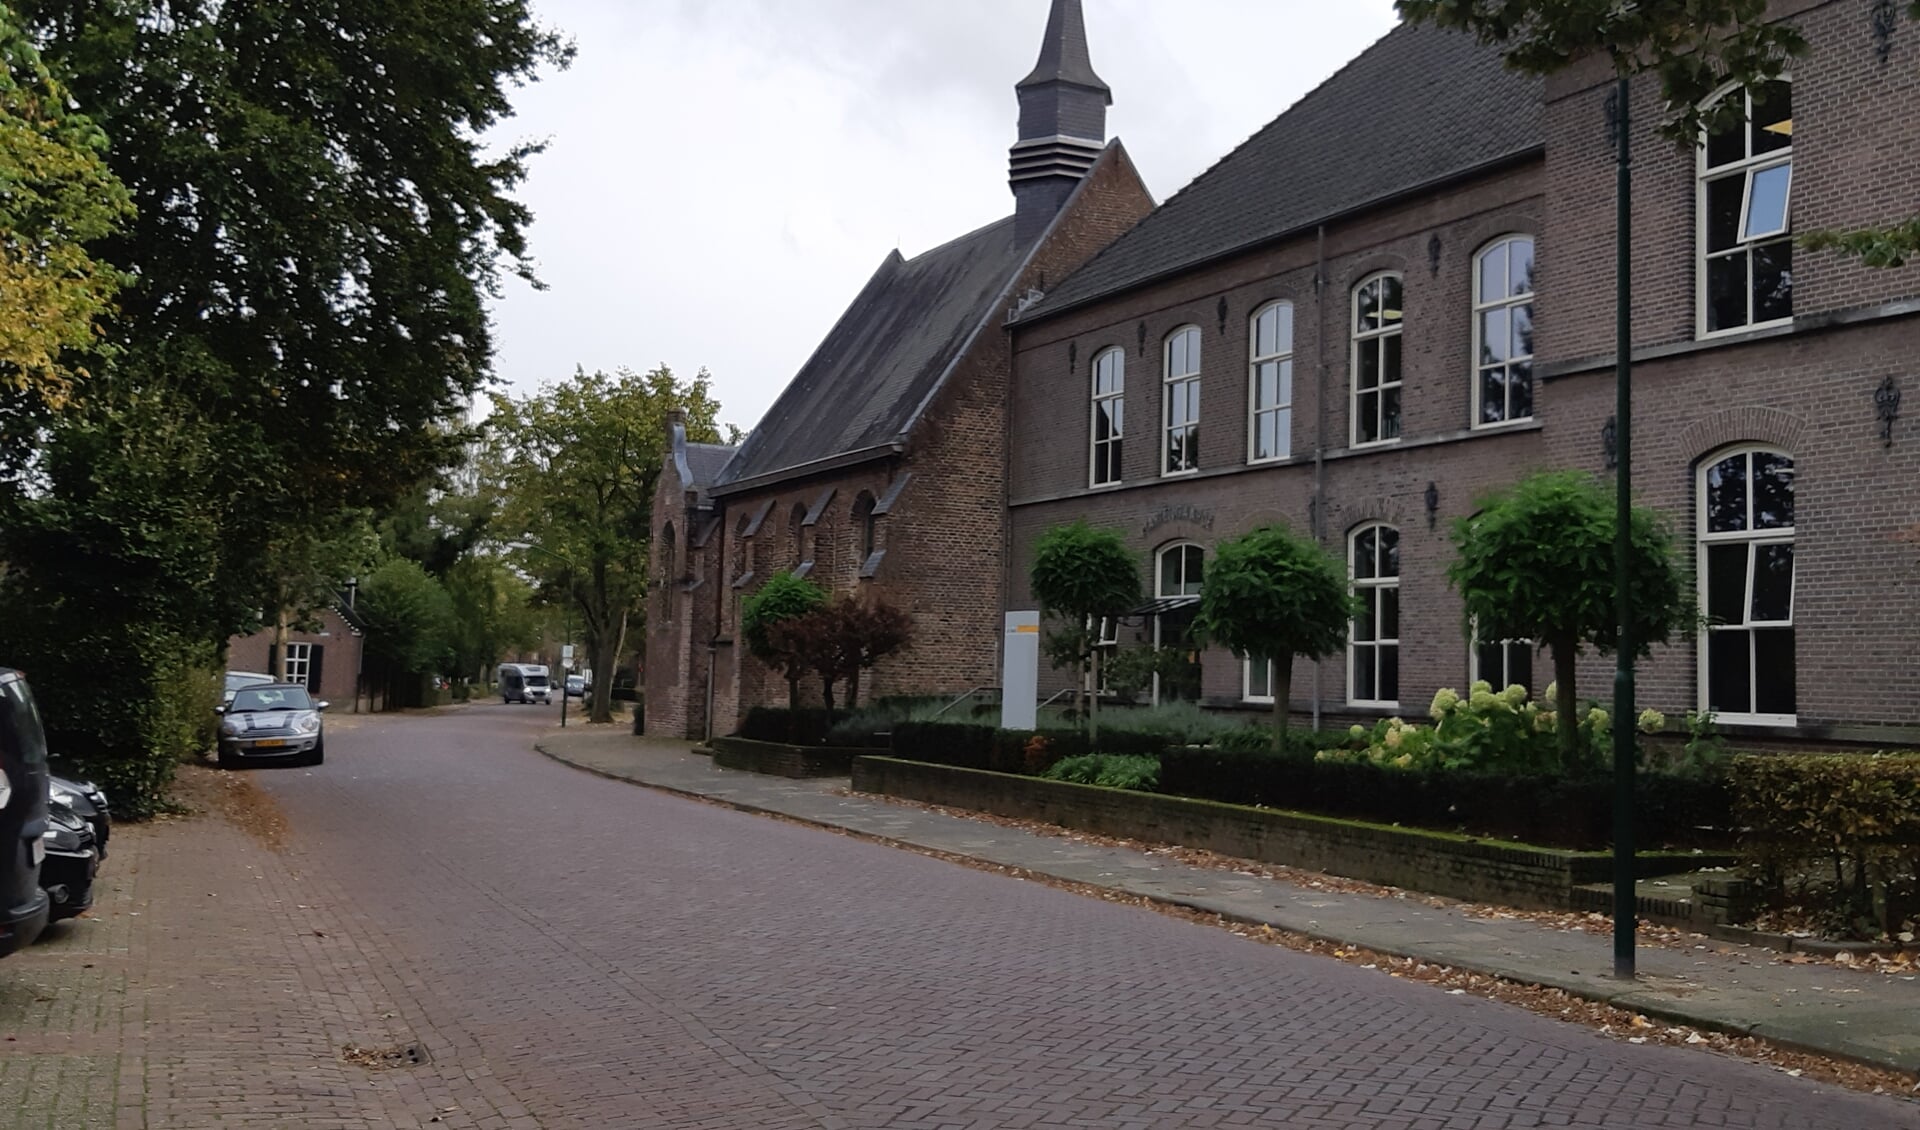 De oude bibliotheek aan de Bosscheweg, één van de locaties in het dorp waar nieuwe woningen gerealiseerd gaan worden